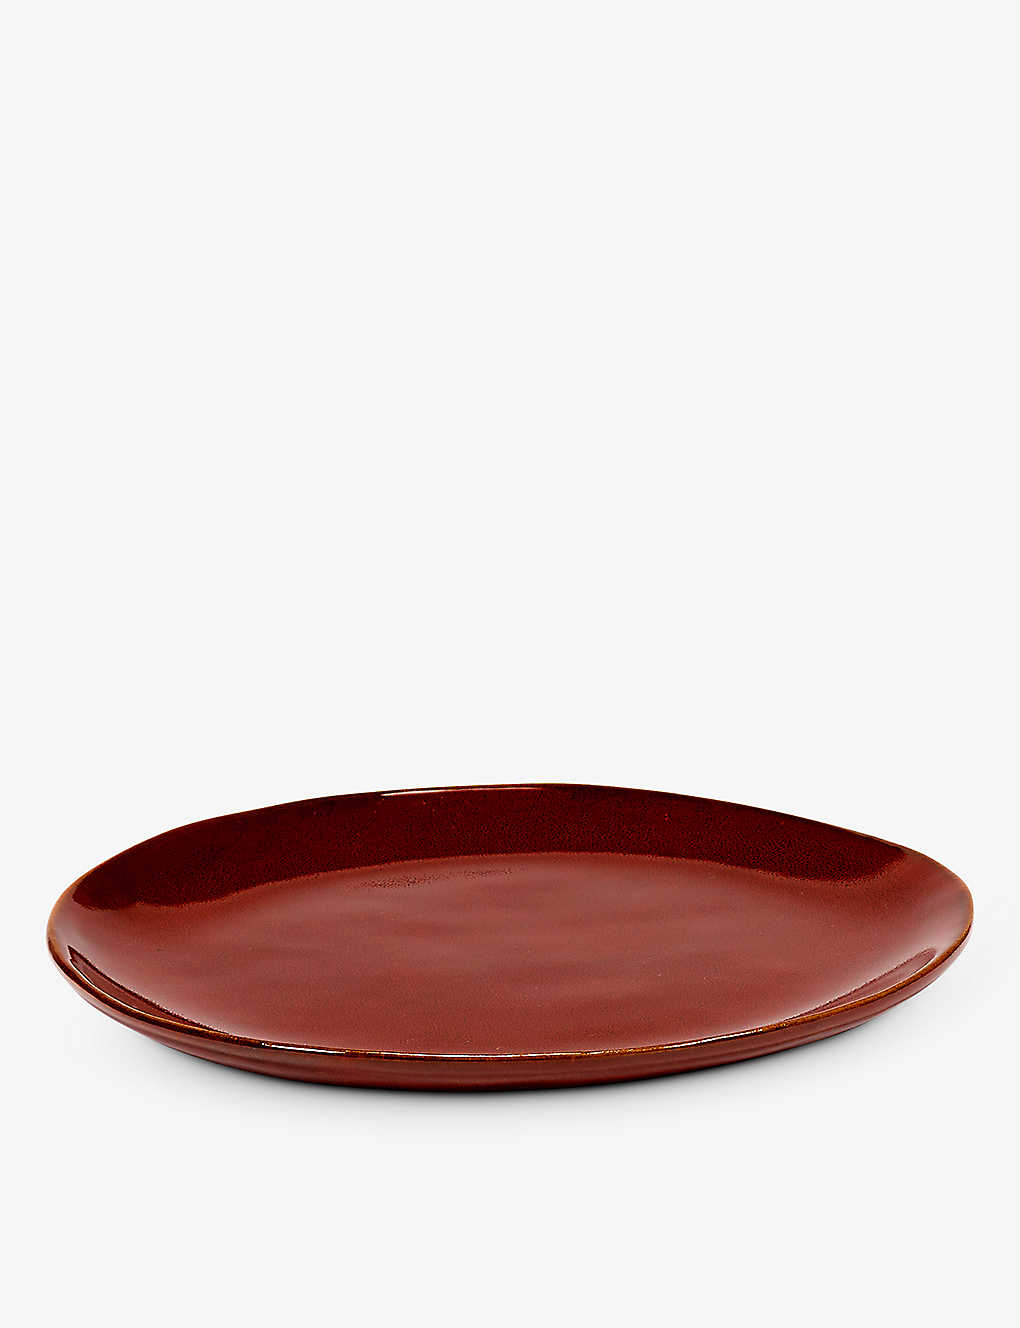 Serax La Mère Irregular Small Stoneware Plate 18cm In Red